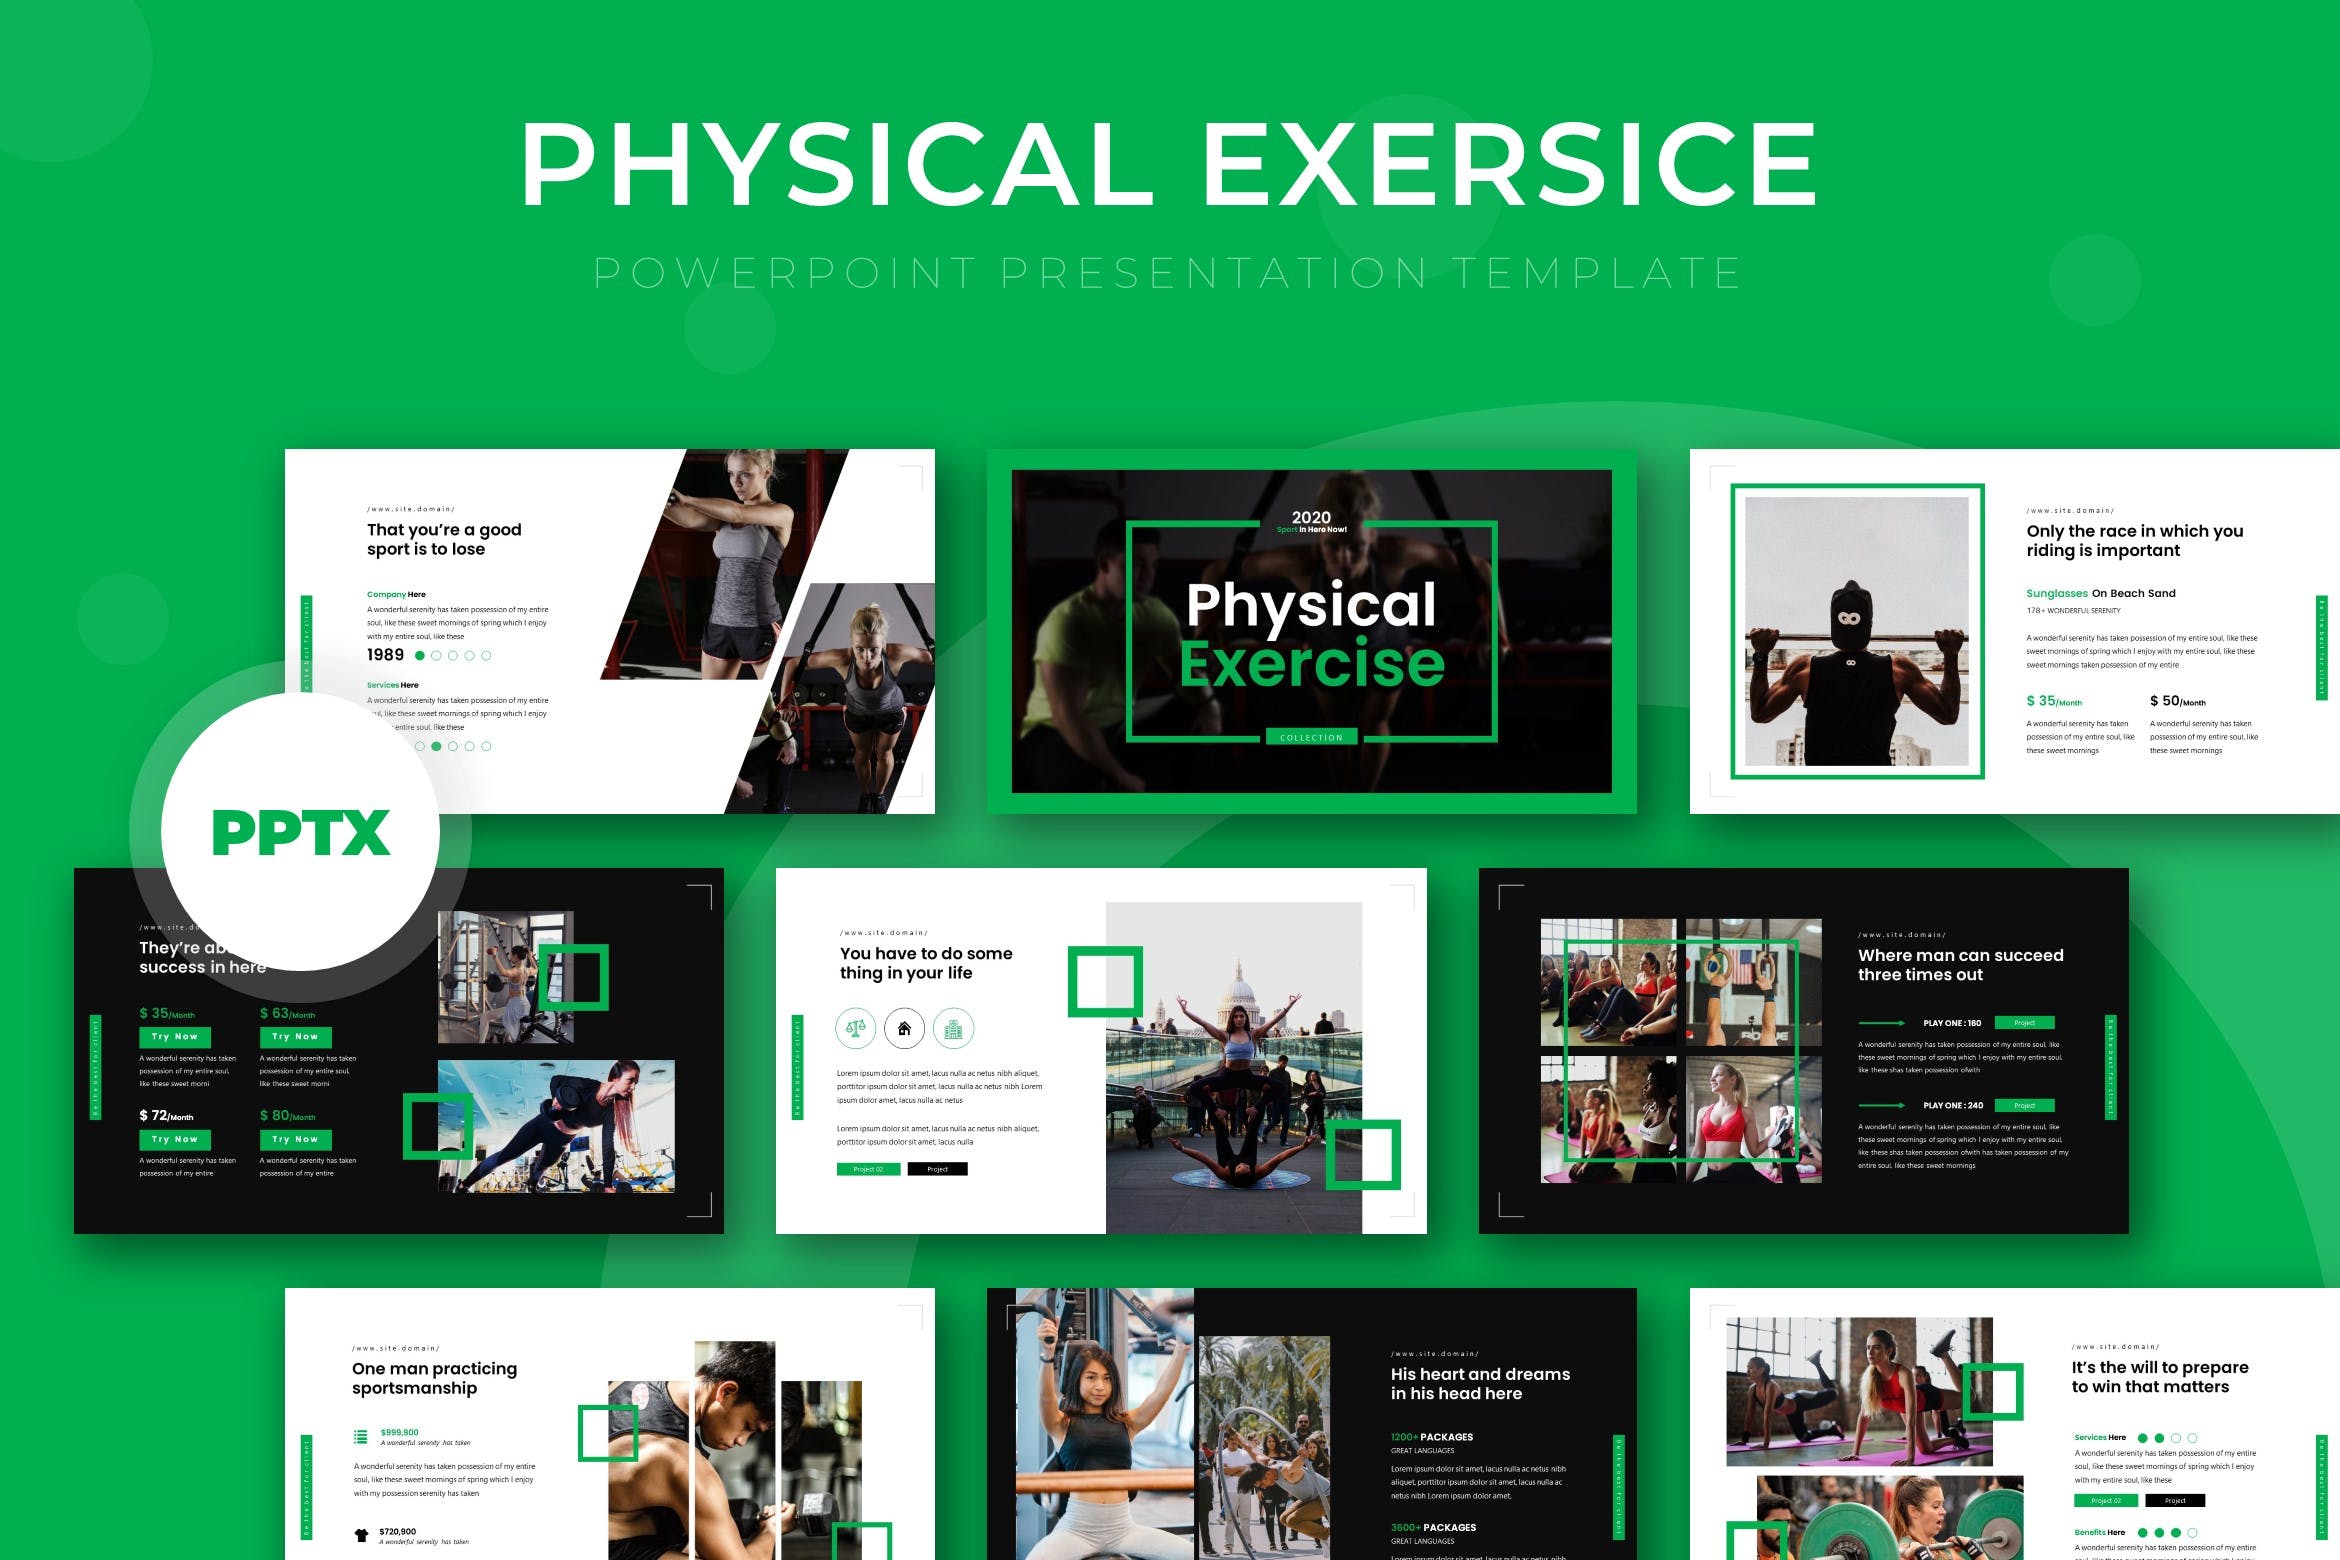 健身教程/健身俱乐部Google演示模板第一素材精选 Physical – Google Slide Template插图